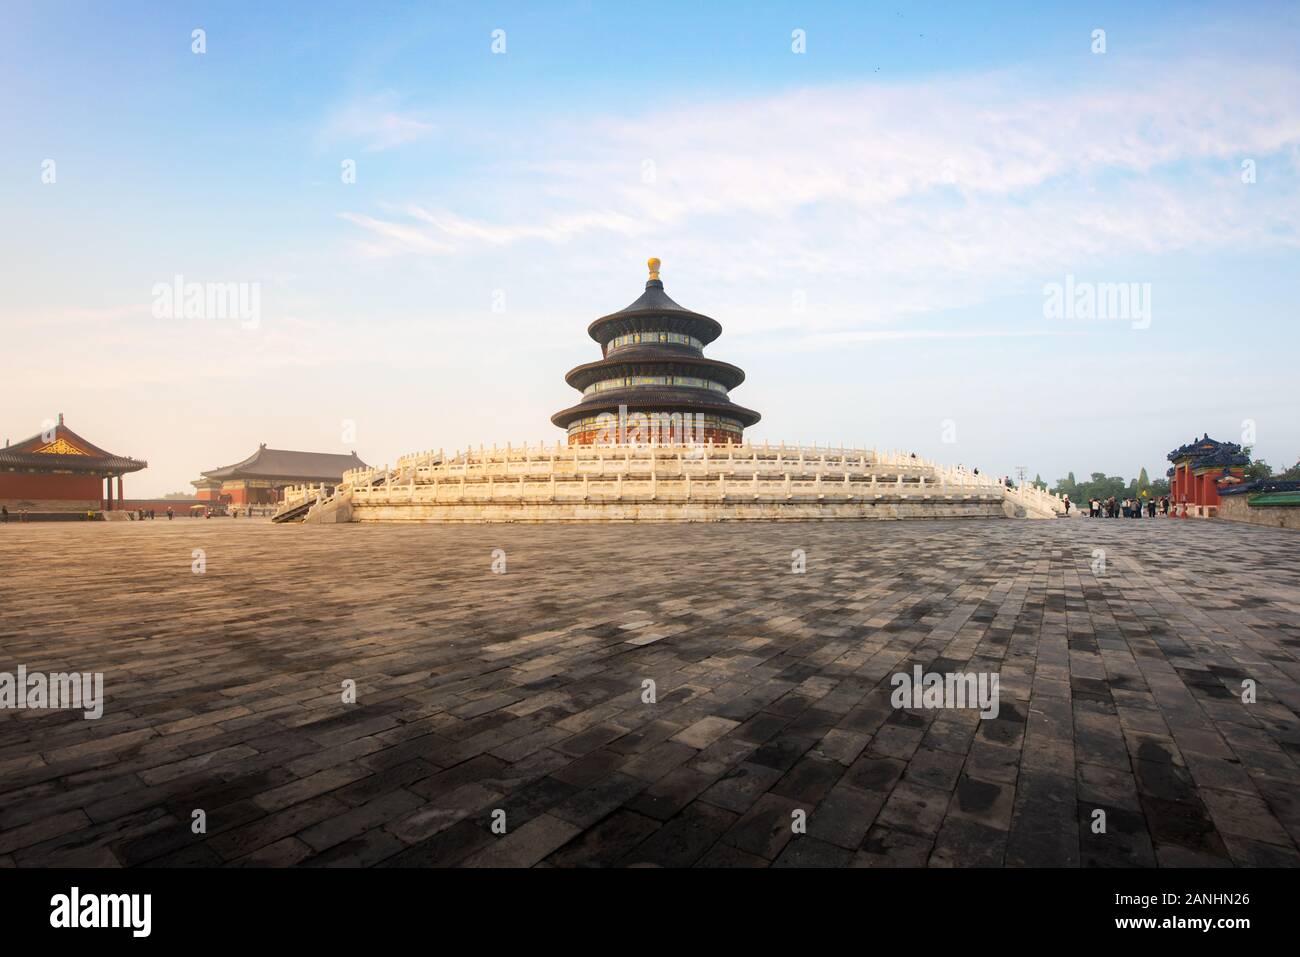 Wunderbare und beeindruckende Tempel in Peking - Himmelstempel in Peking, China. Halle des Gebetes für eine gute Ernte. Asiatische Tourismus, Geschichte Gebäude oder tradit Stockfoto